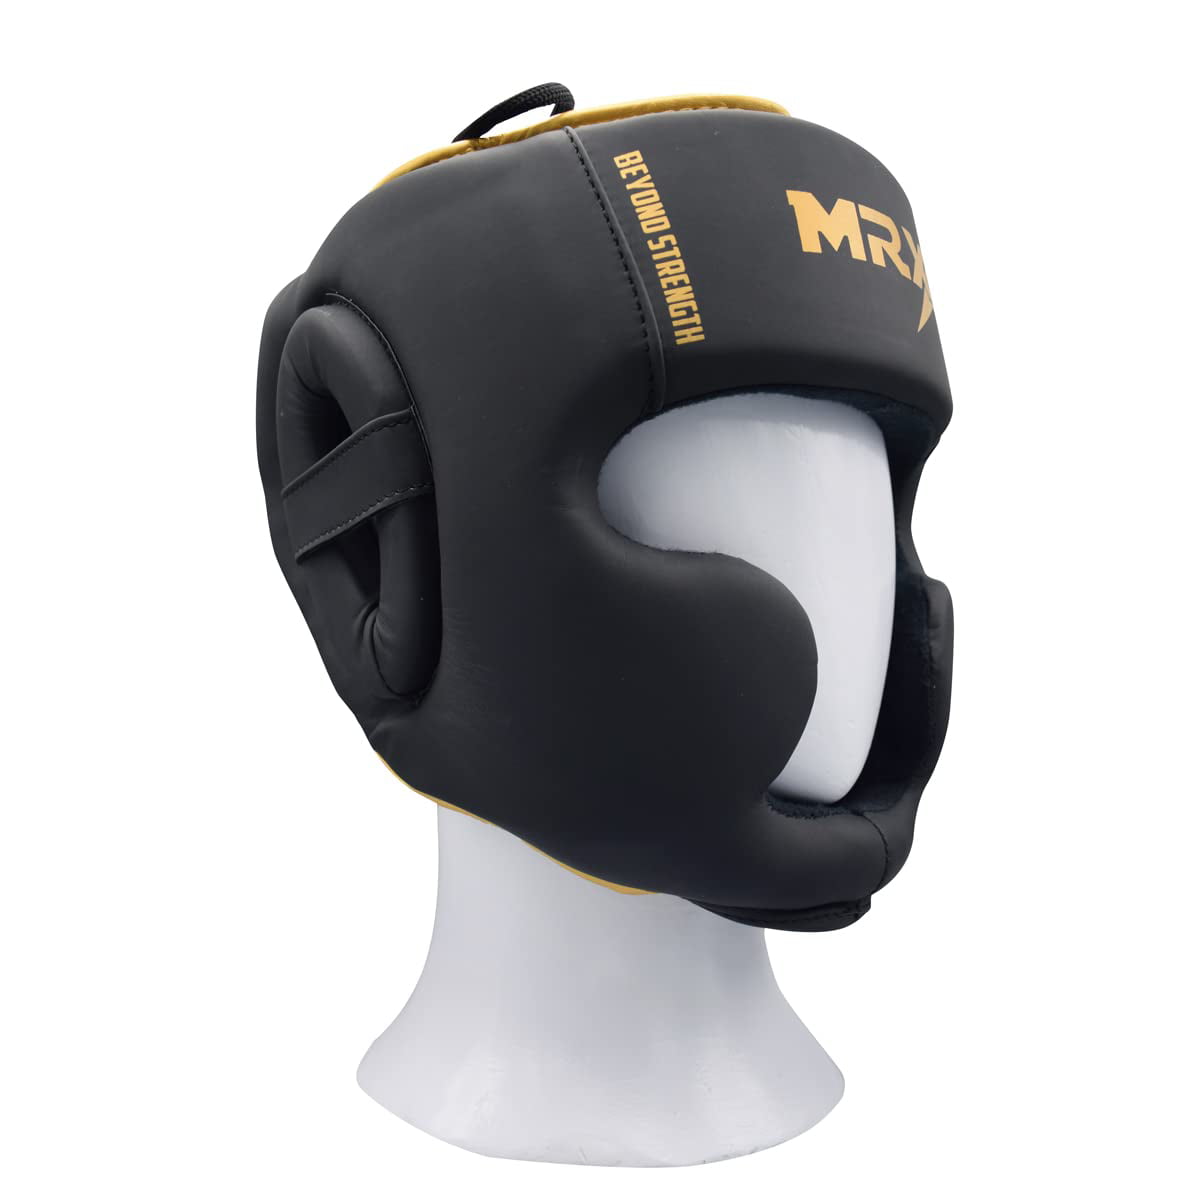 Professional Kick Boxing Head Guard Face Protectors Headgear Sparring Helmet New 